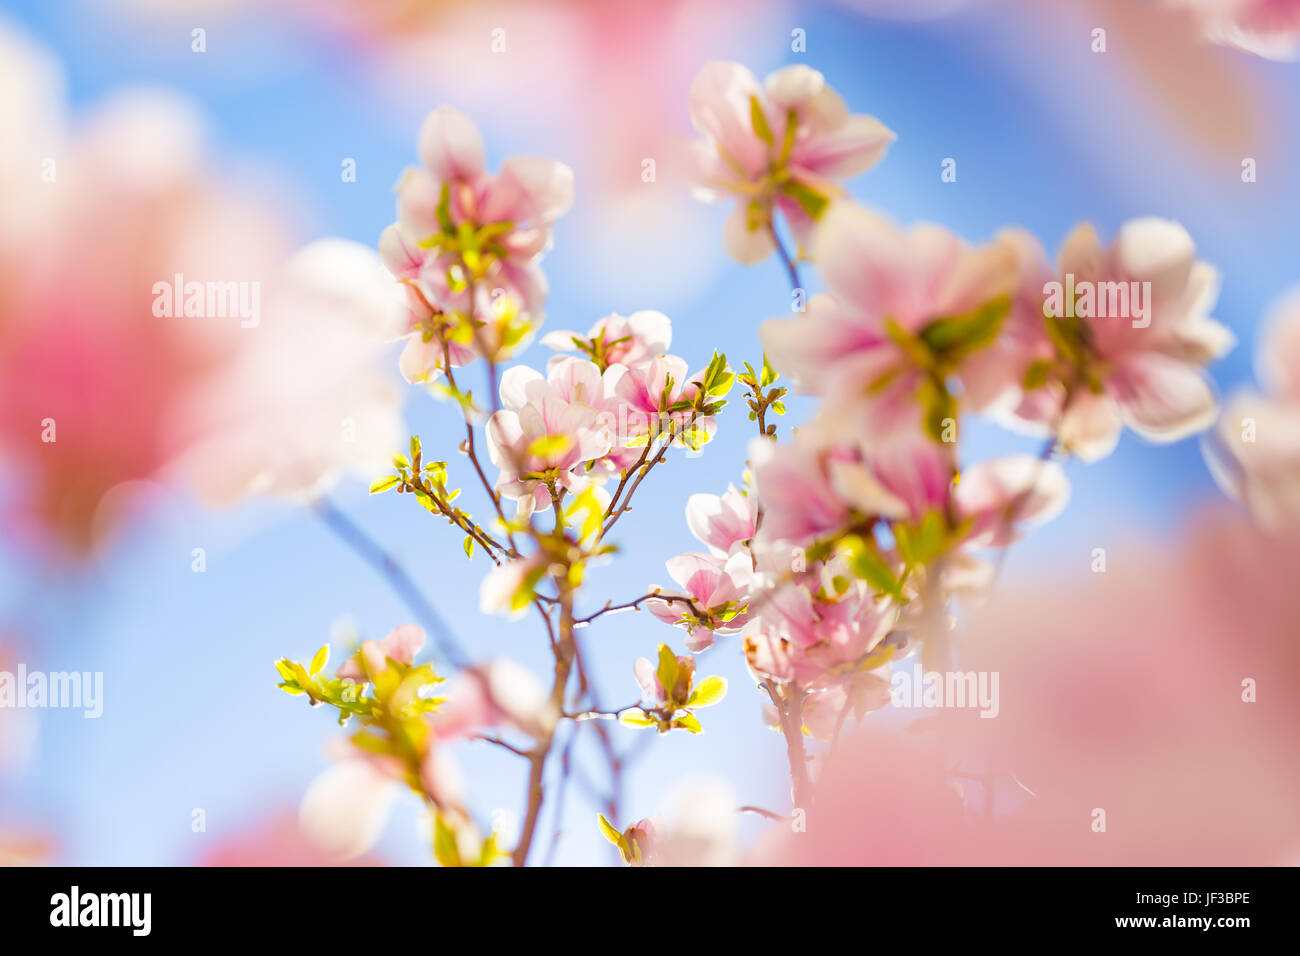 Erstaunlich Frühling Blumen Hintergrund. Die hellen und weichen Frühling Sommer Hintergrund mit Blumen und blauer Himmel. Abstrakt floral Konzept für Frühling Stockfoto